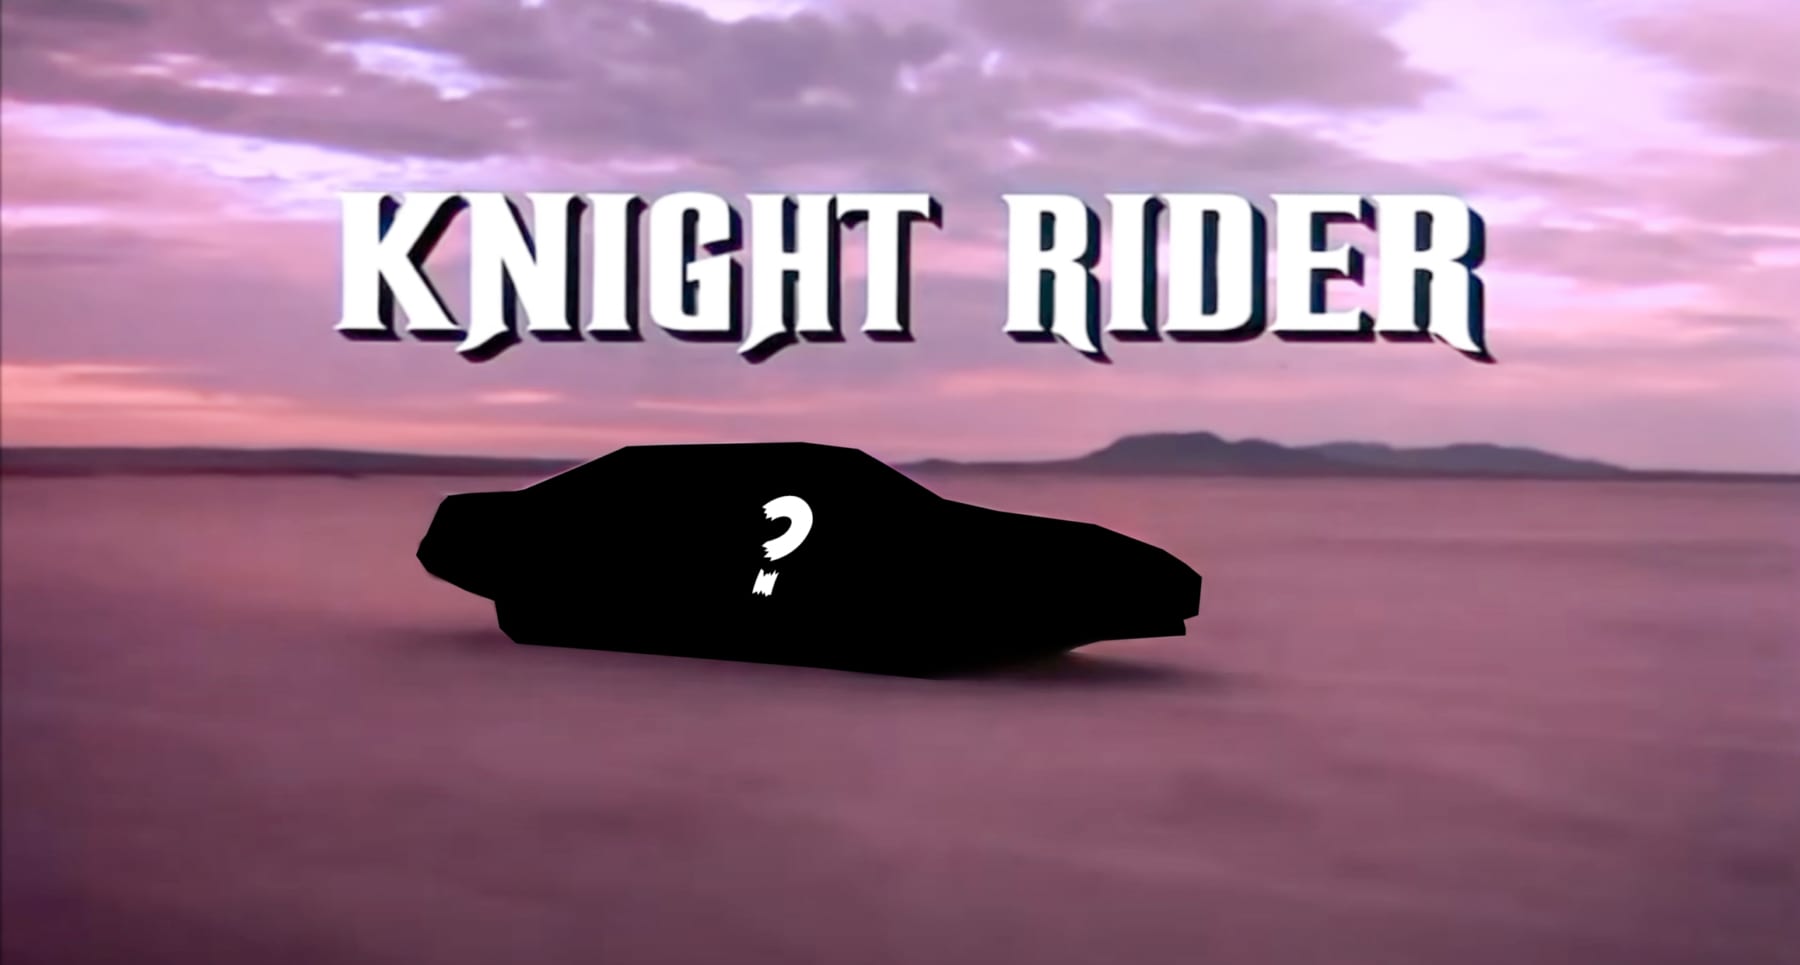 Knight rider reboot